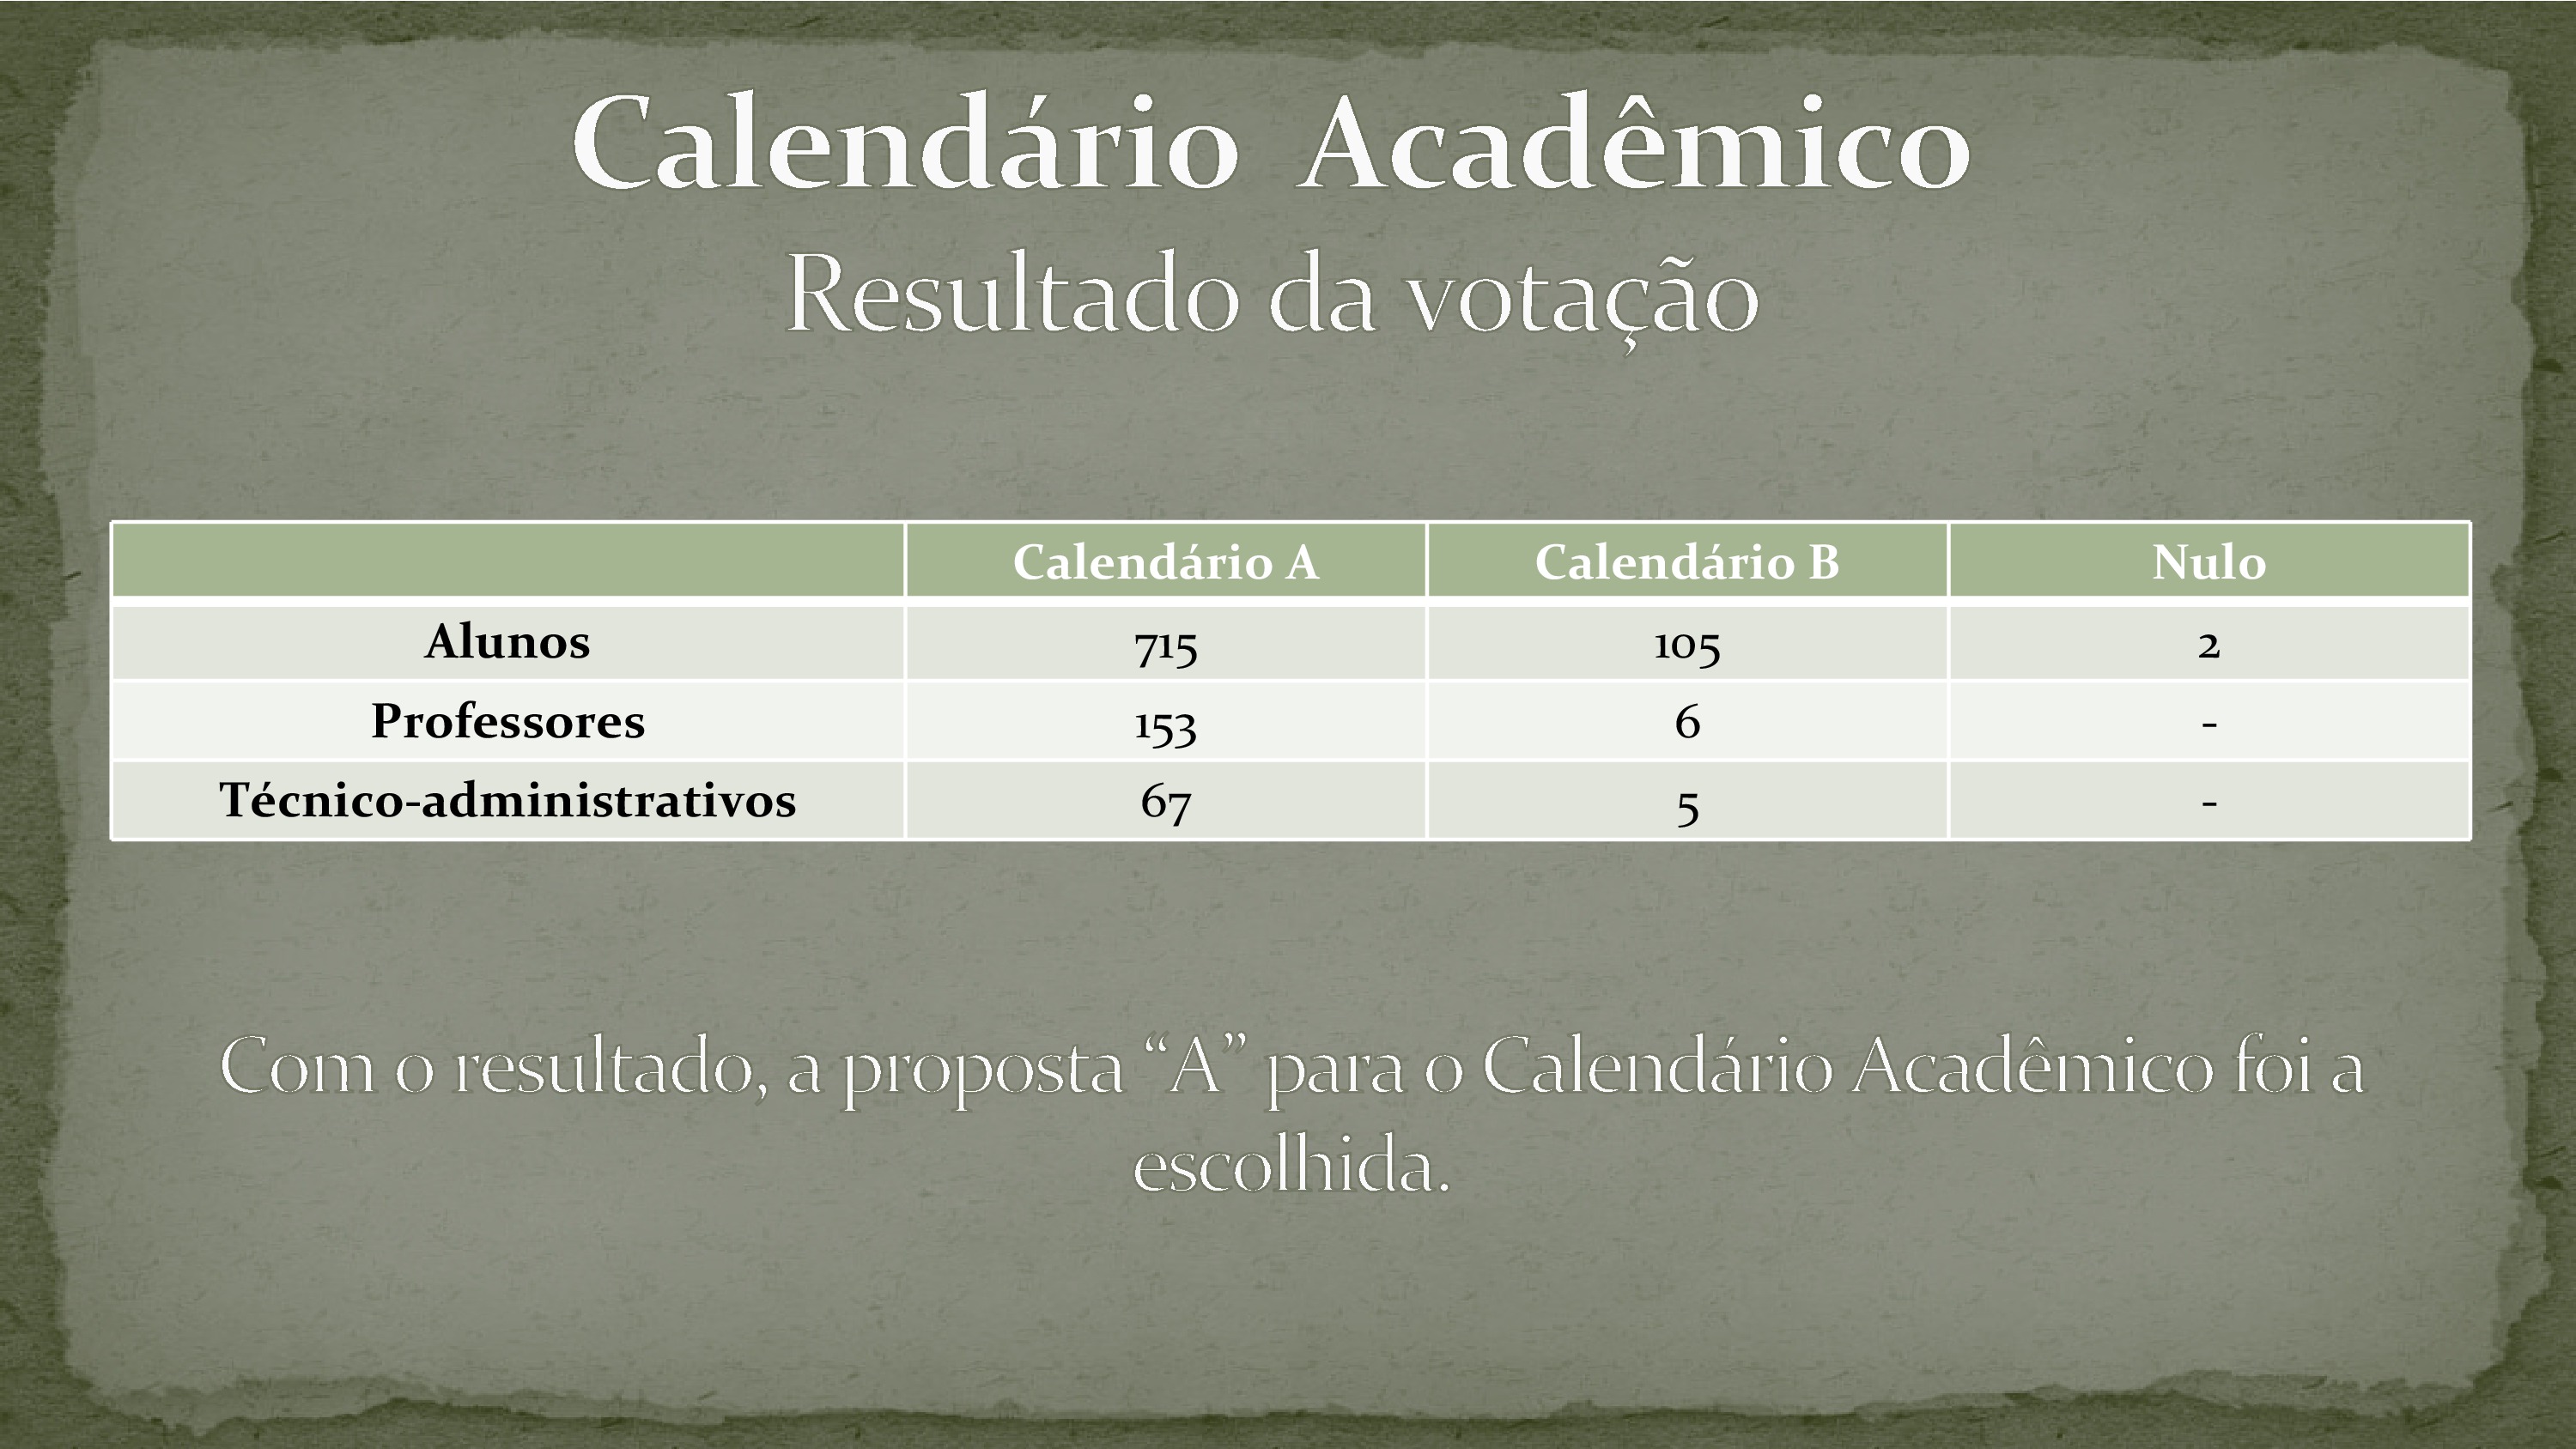 Resultados da votação para o Calendário